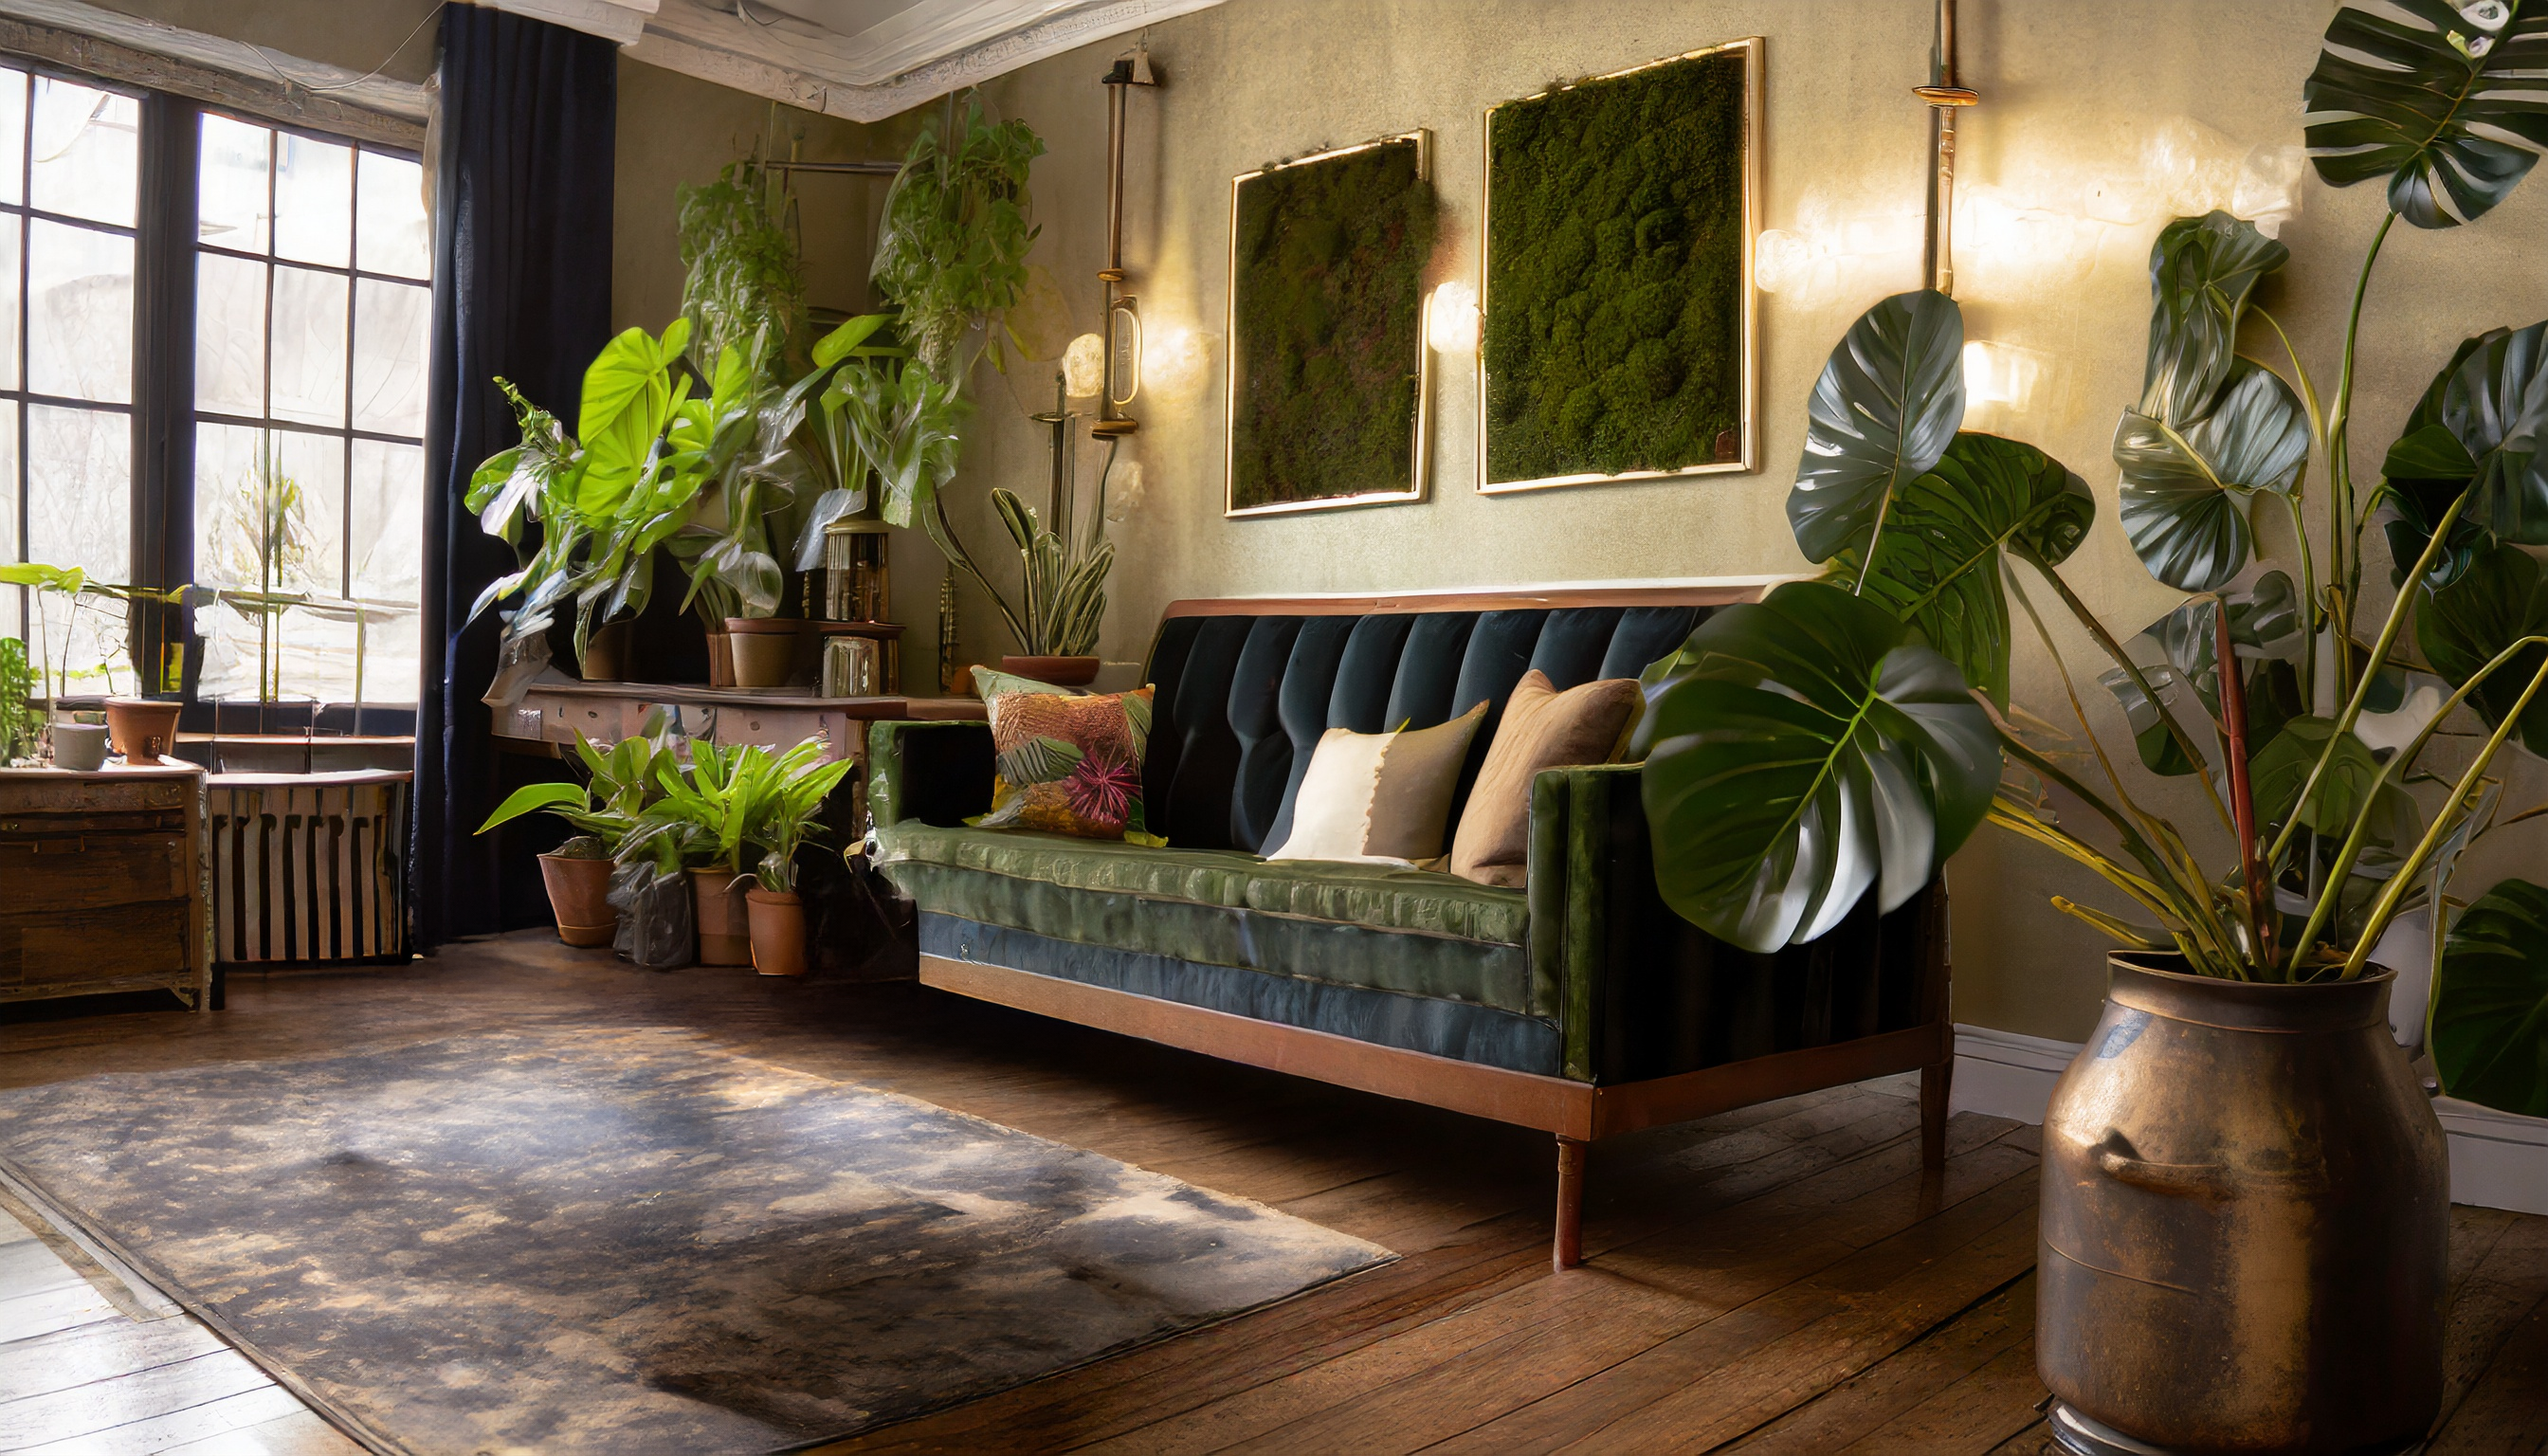 Stilvolles Wohnzimmer mit dunkelgrünem Samtsofa, eleganten Wandn Bilder aus Moos, vielfältigen Zimmerpflanzen und einem großen Fenster, das natürliches Licht hereinlässt und den Raum mit einer warmen Atmosphäre erfüllt